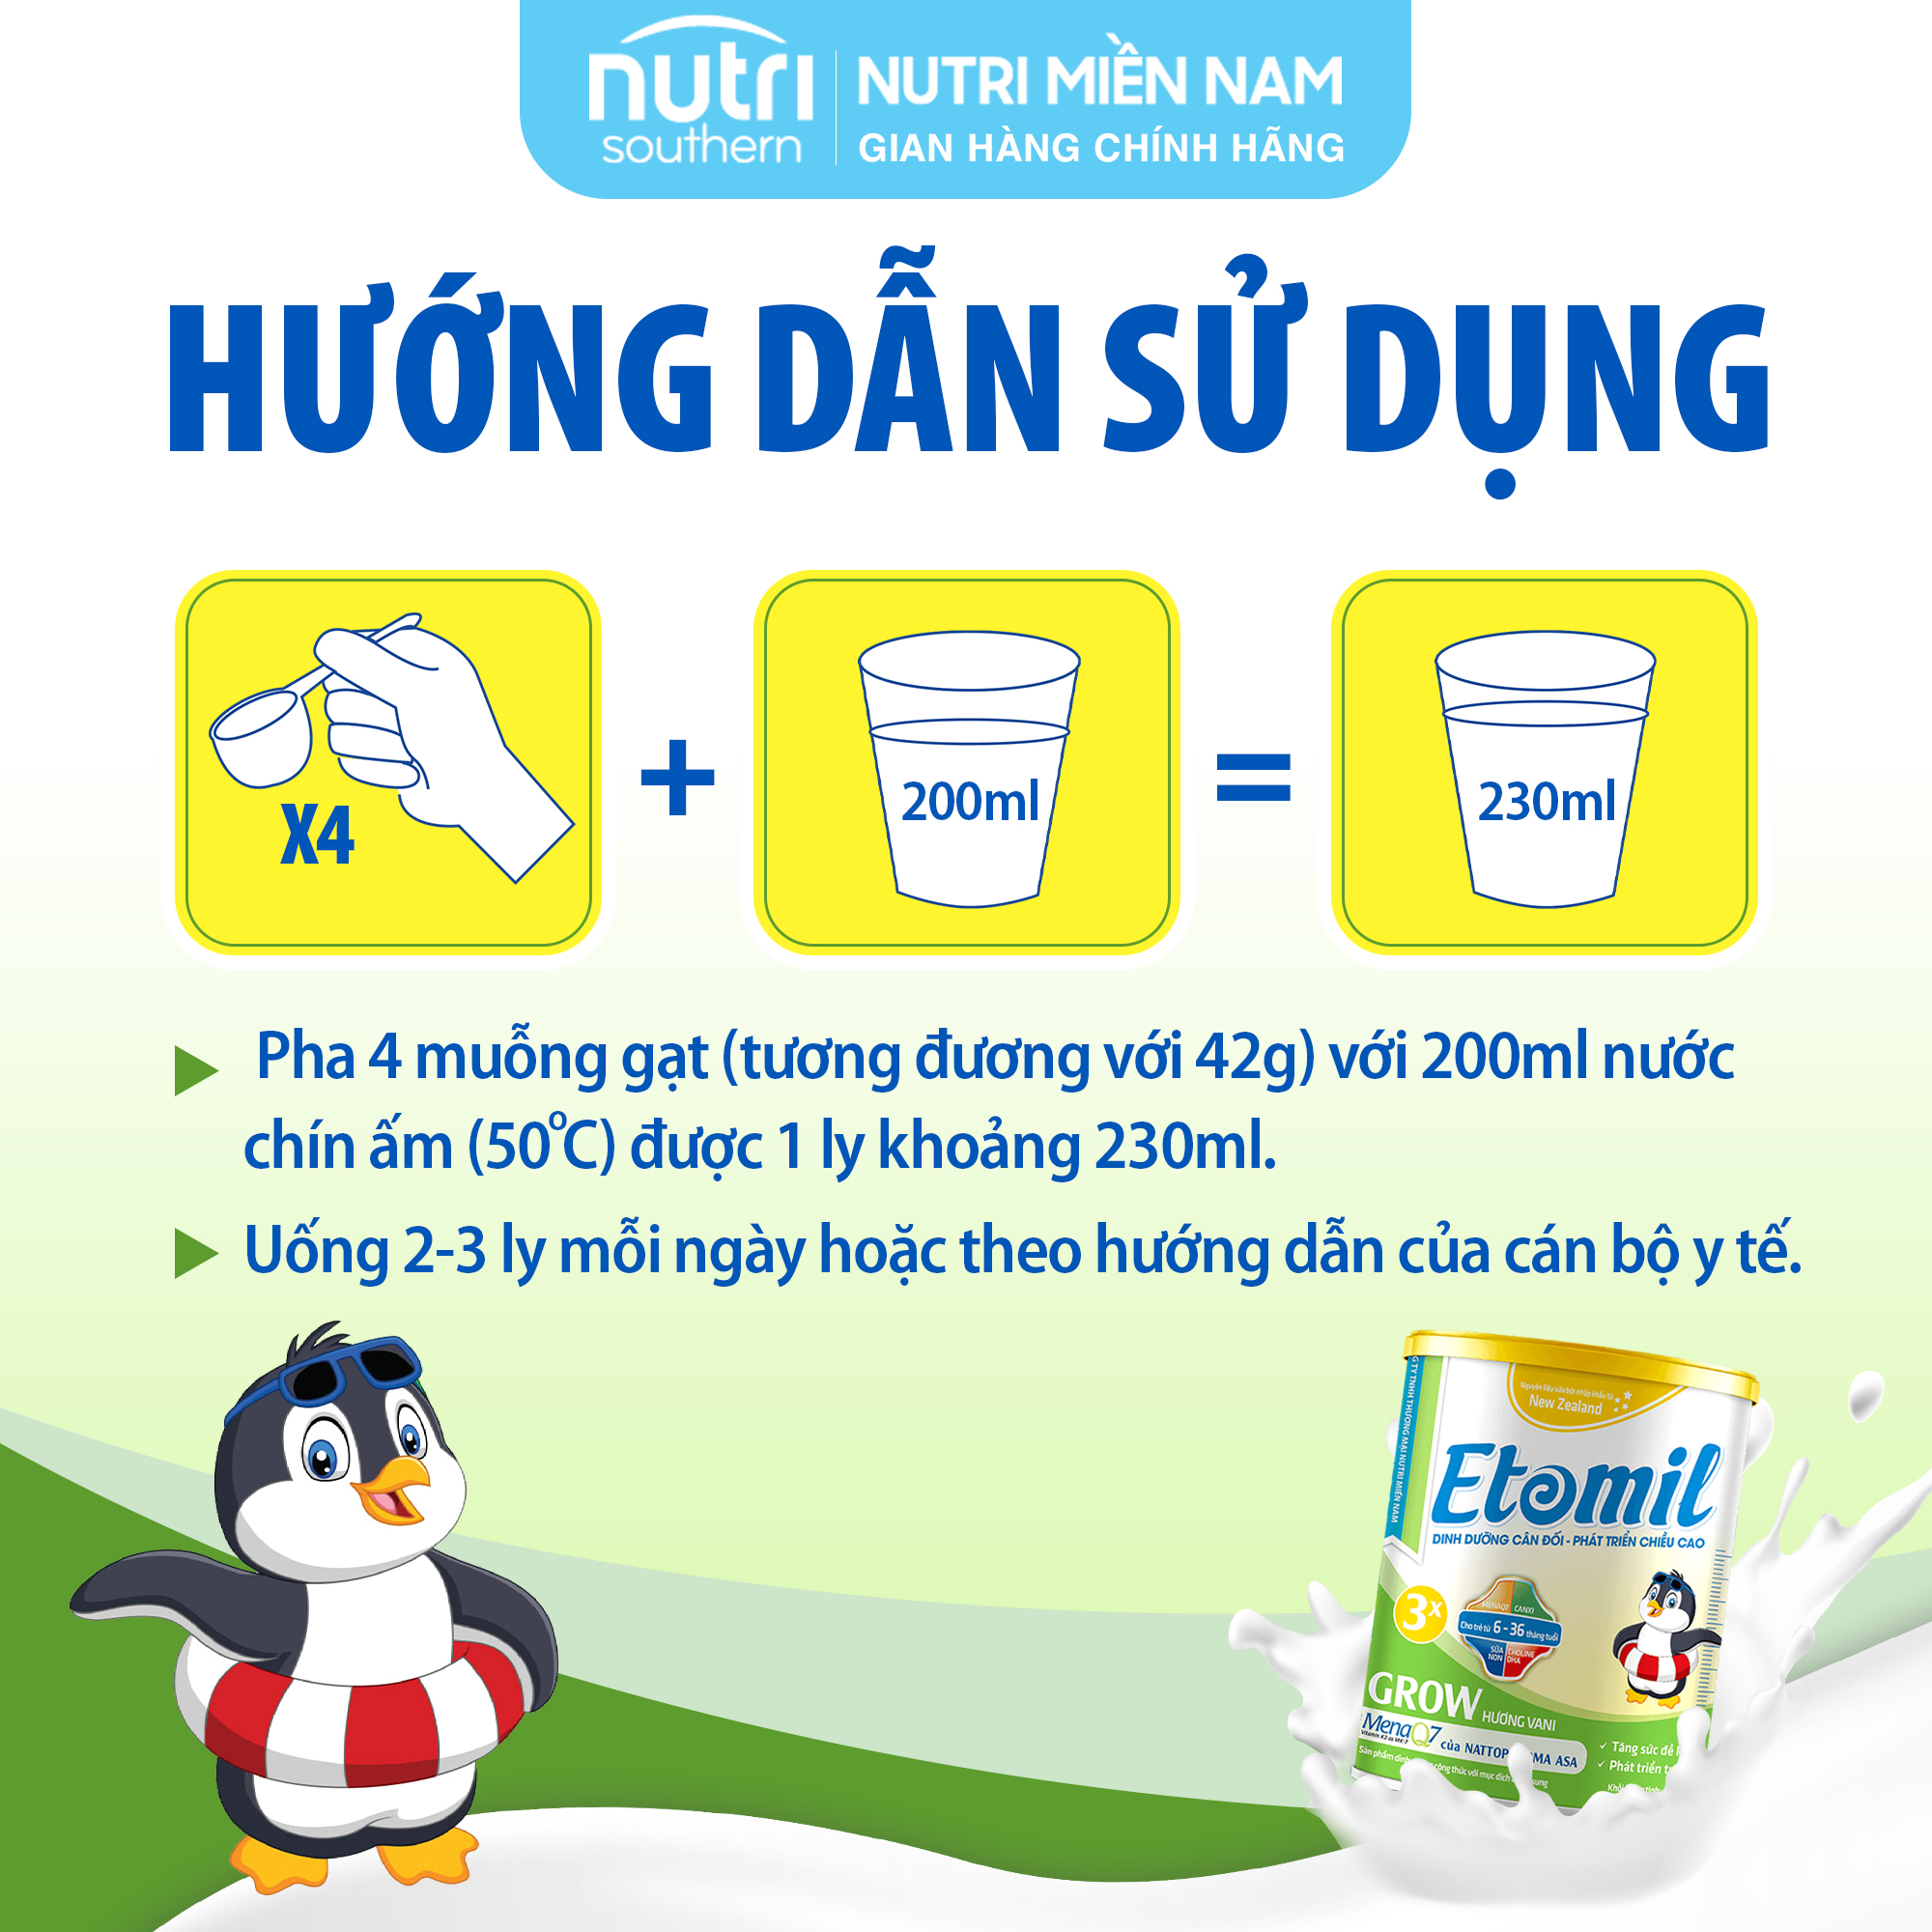 Sữa Etomil 3X Grow hộp 700gram - Giúp bé tăng cường phát triển chiều cao (Sữa công thức)